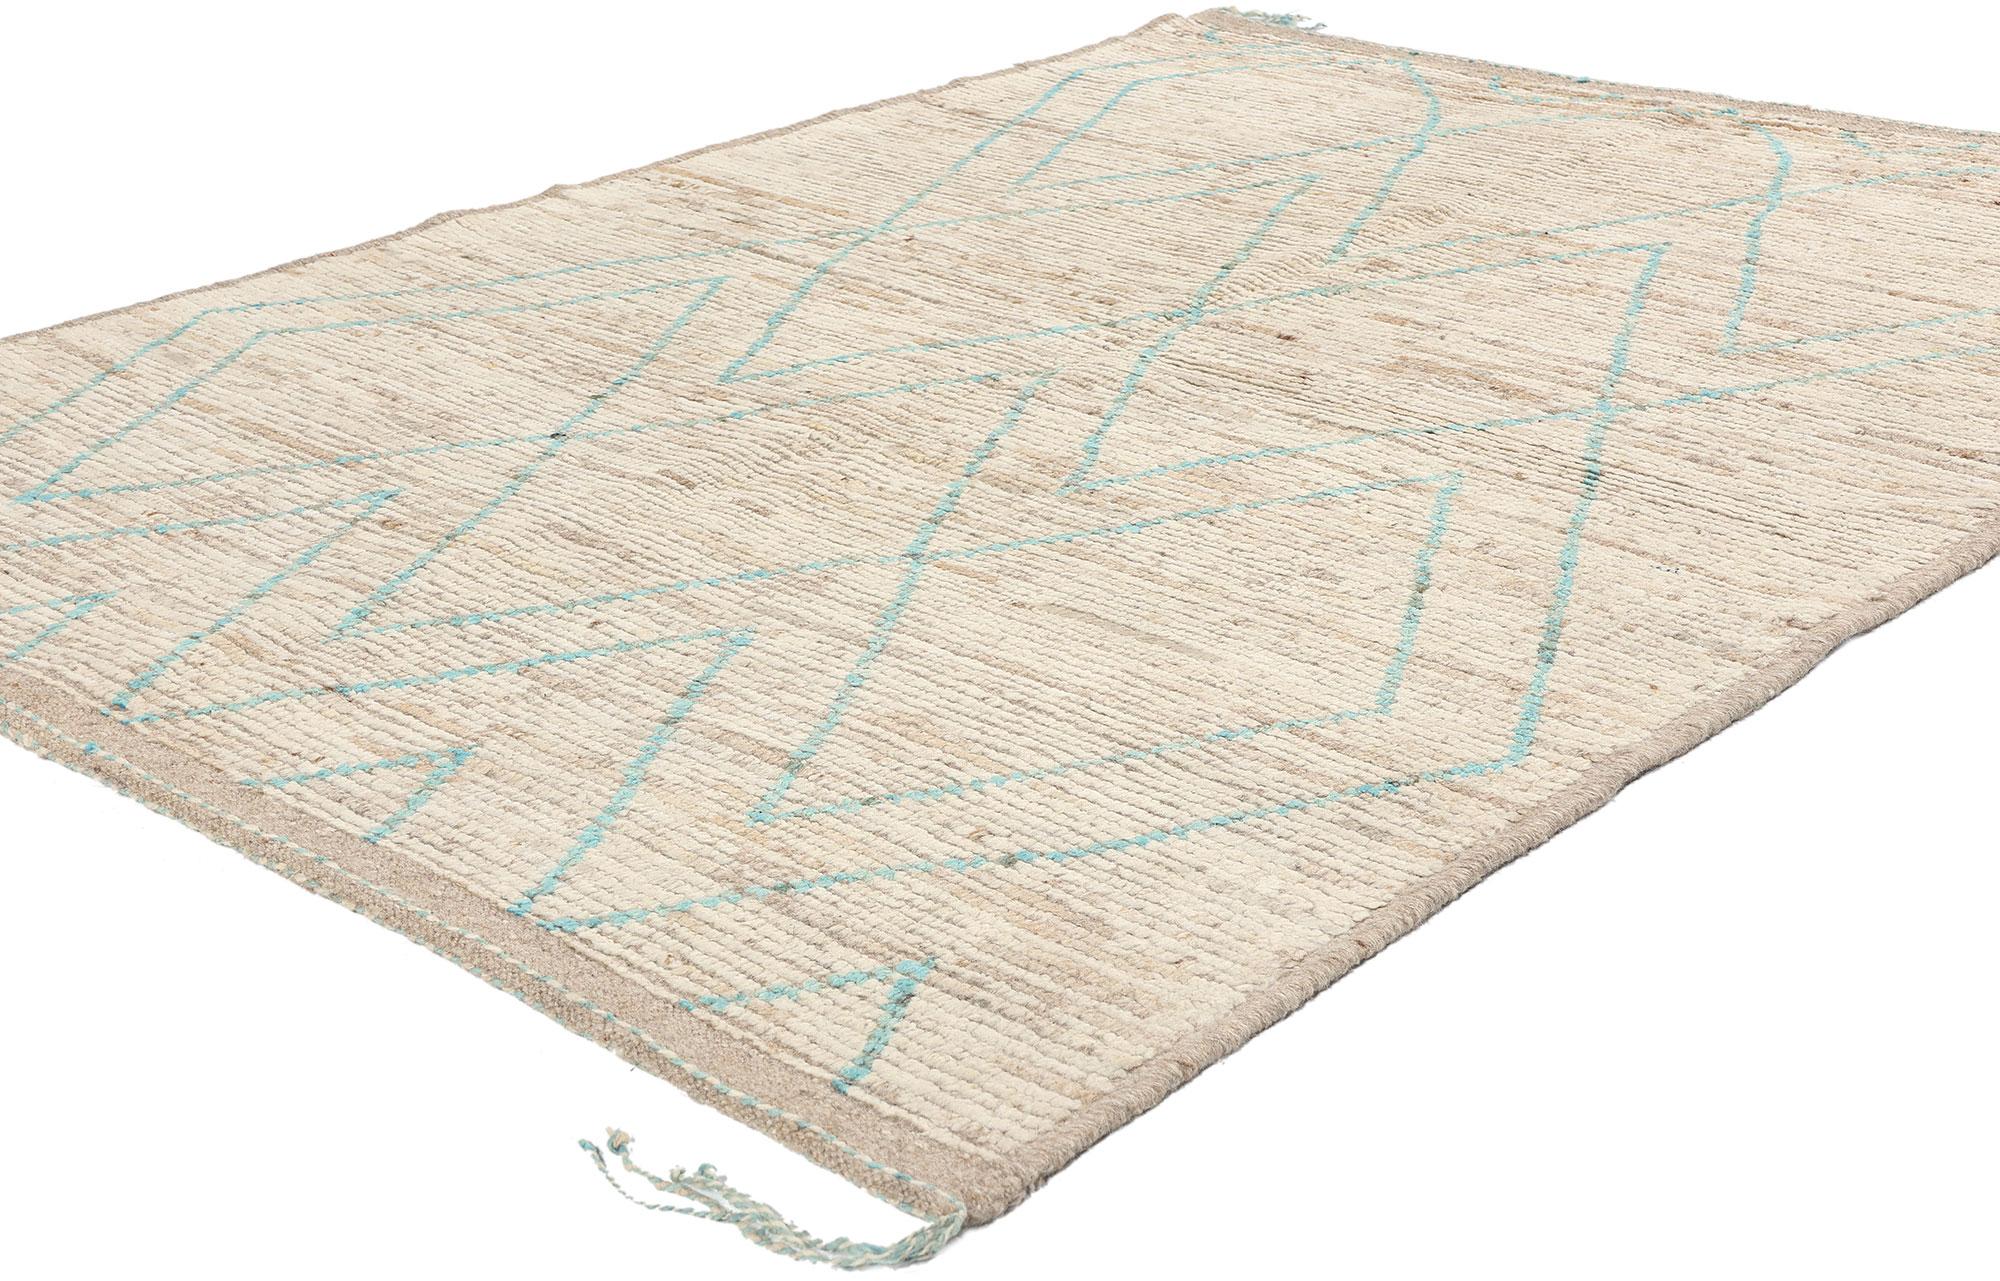 80783 New Weicher erdfarbener marokkanischer Teppich mit kurzem Flor 05'00 x 06'08. Die pakistanisch-marokkanischen Teppiche, die in Pakistan in sorgfältiger Handarbeit hergestellt werden, zeichnen sich durch ihre außergewöhnliche Qualität und